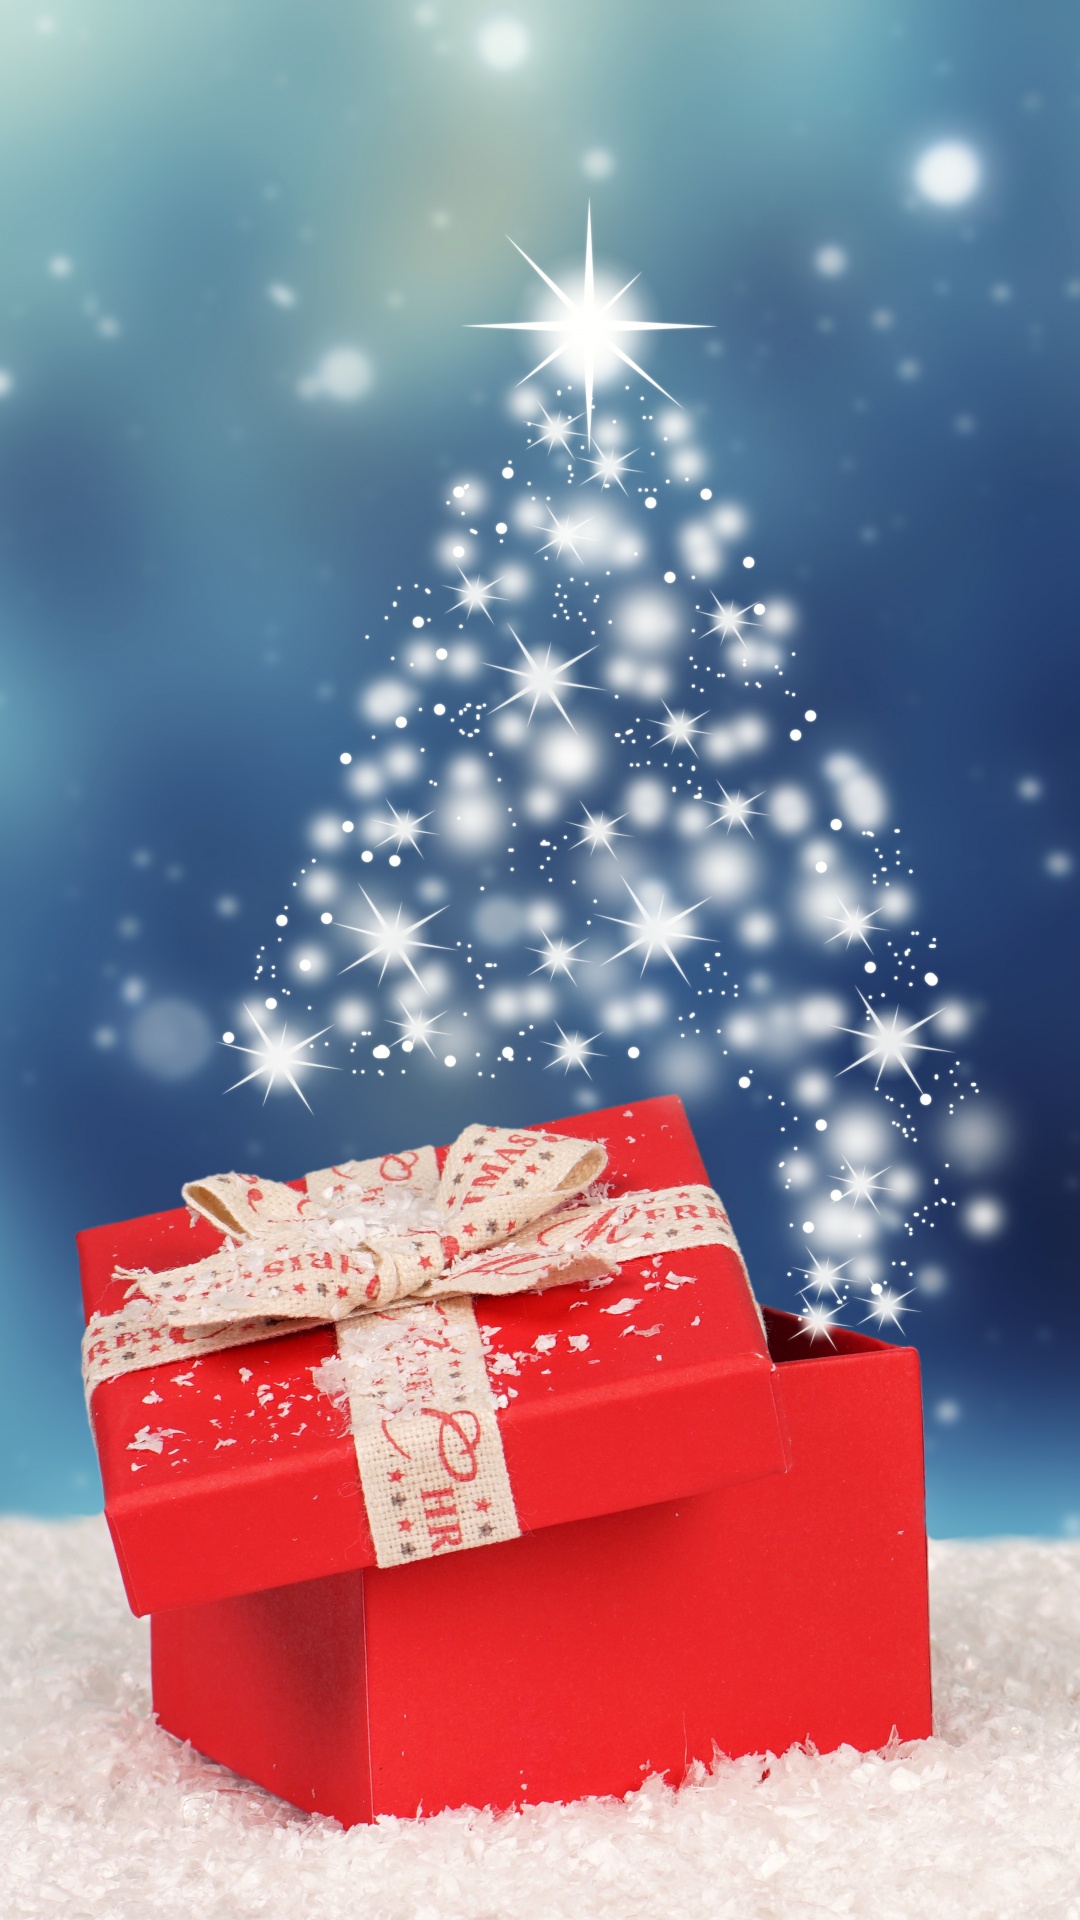 圣诞节那天, 冬天, 圣诞节, 圣诞树, 圣诞前夕 壁纸 1080x1920 允许